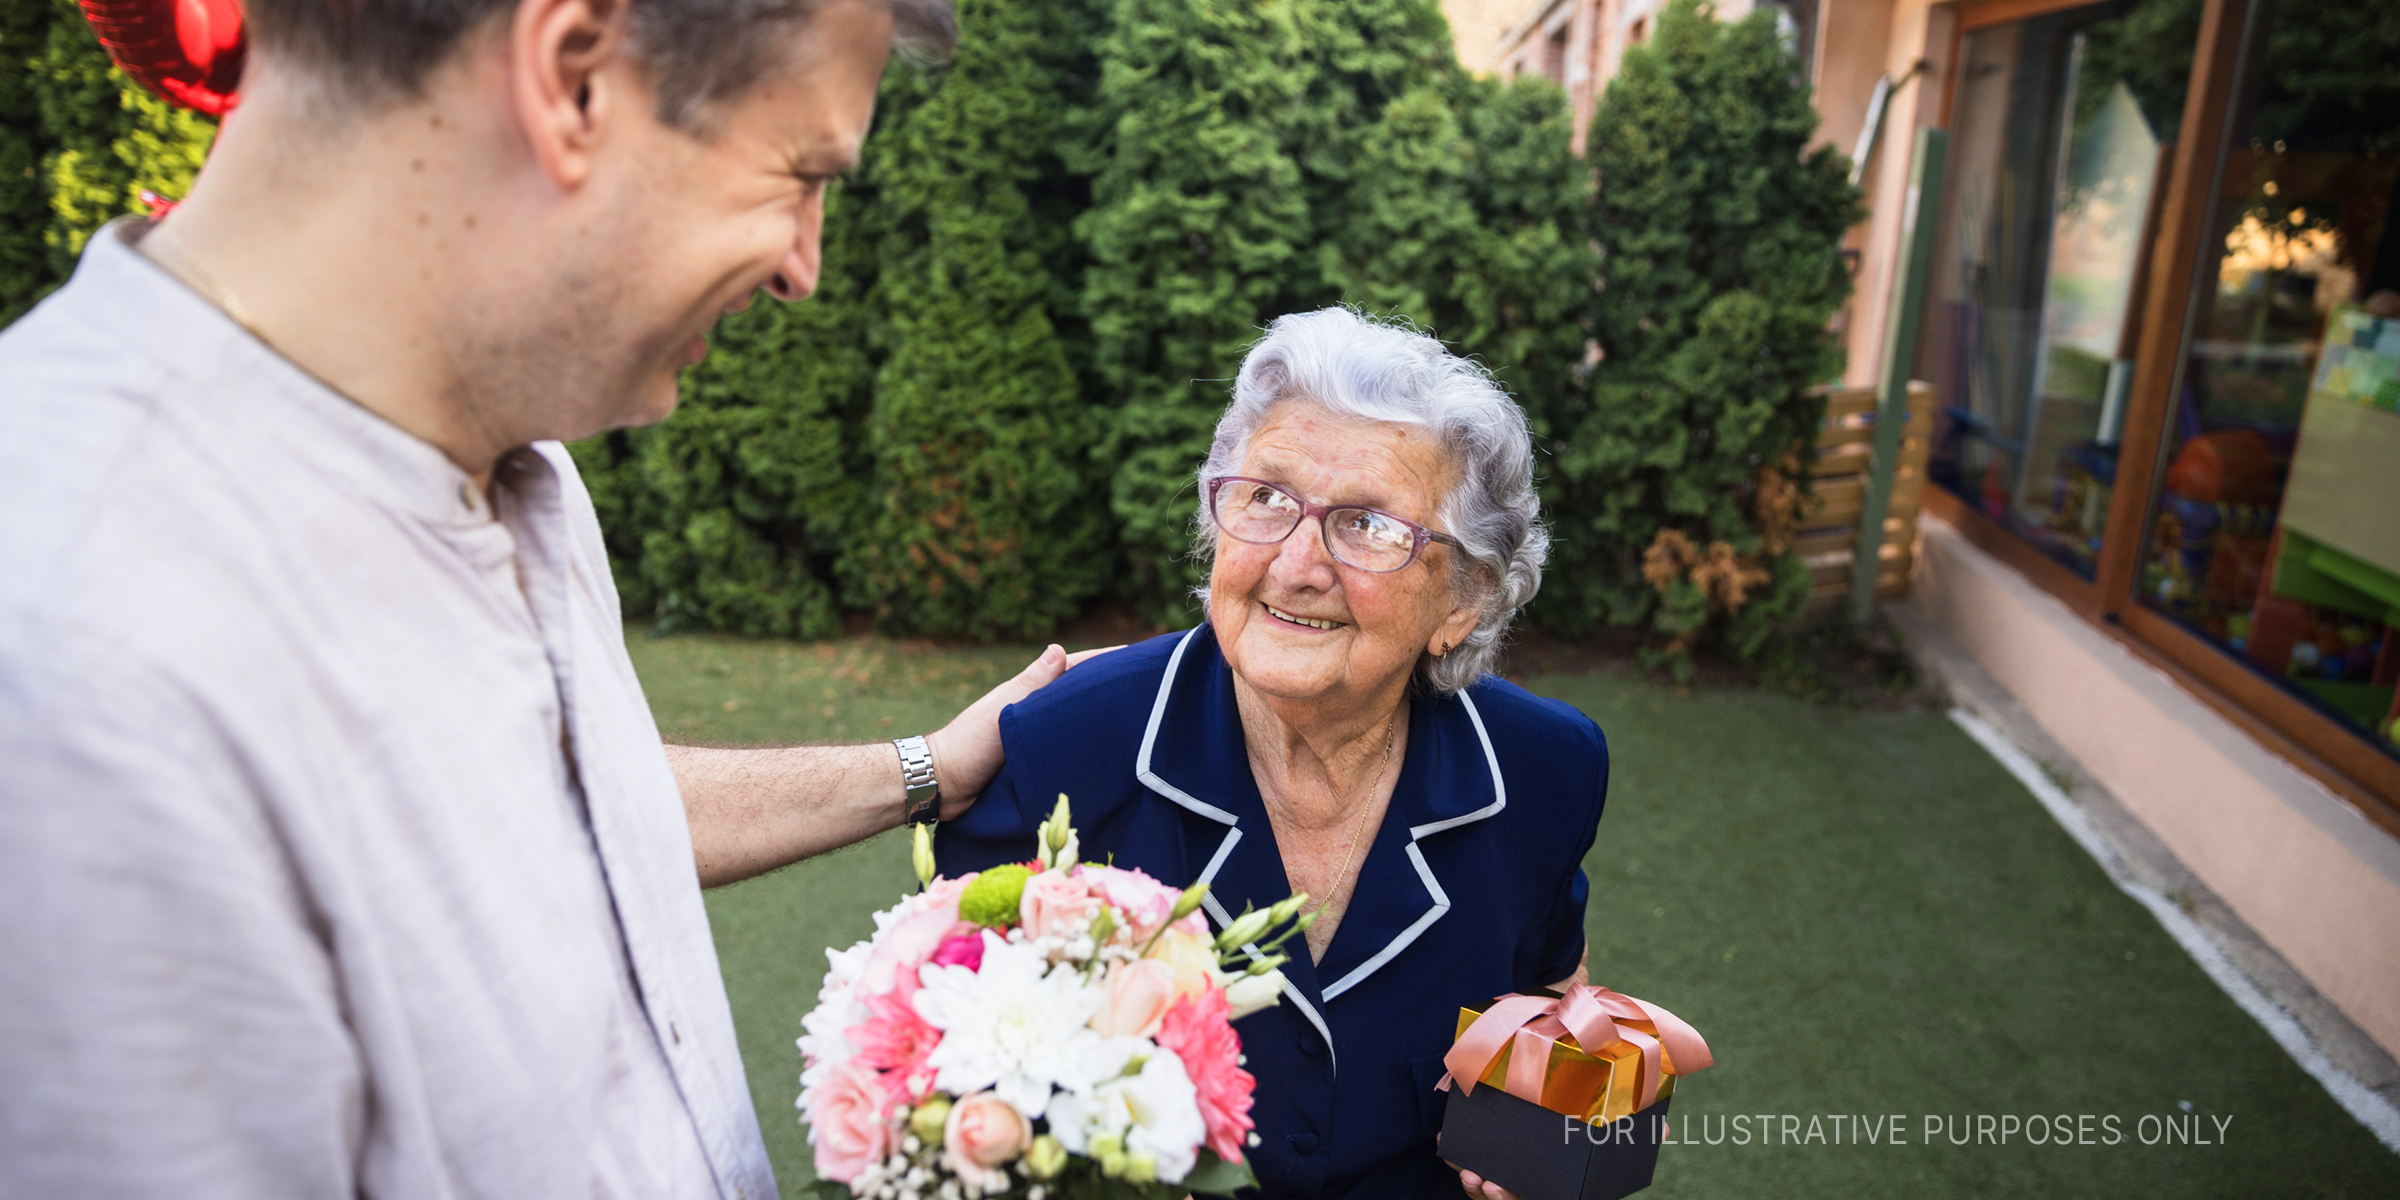 Ältere Frau mit Mann | Quelle: Getty Images